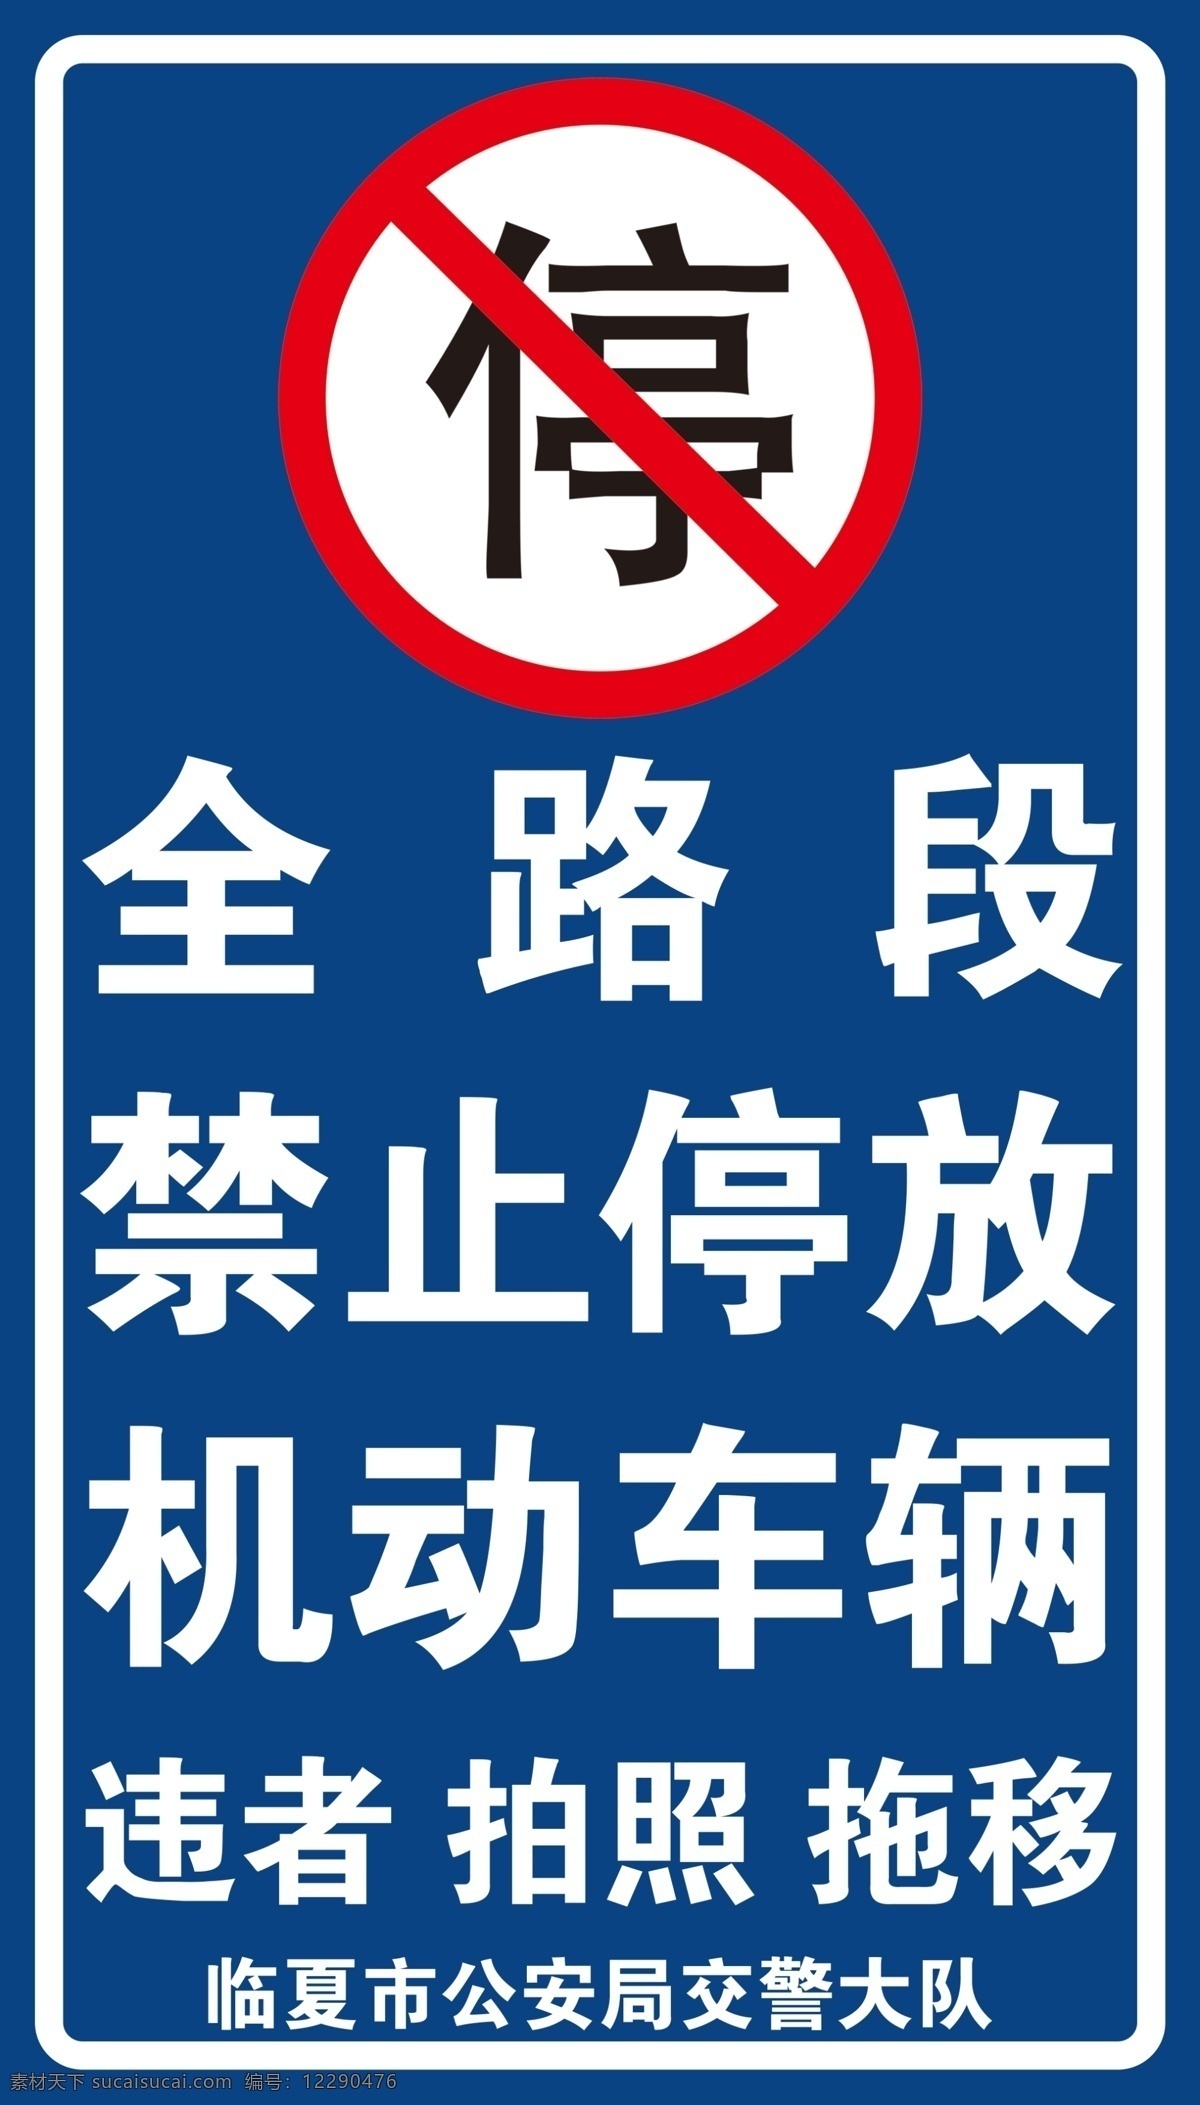 禁止停车图片 全 路 段 禁 止 停 车 室外广告设计